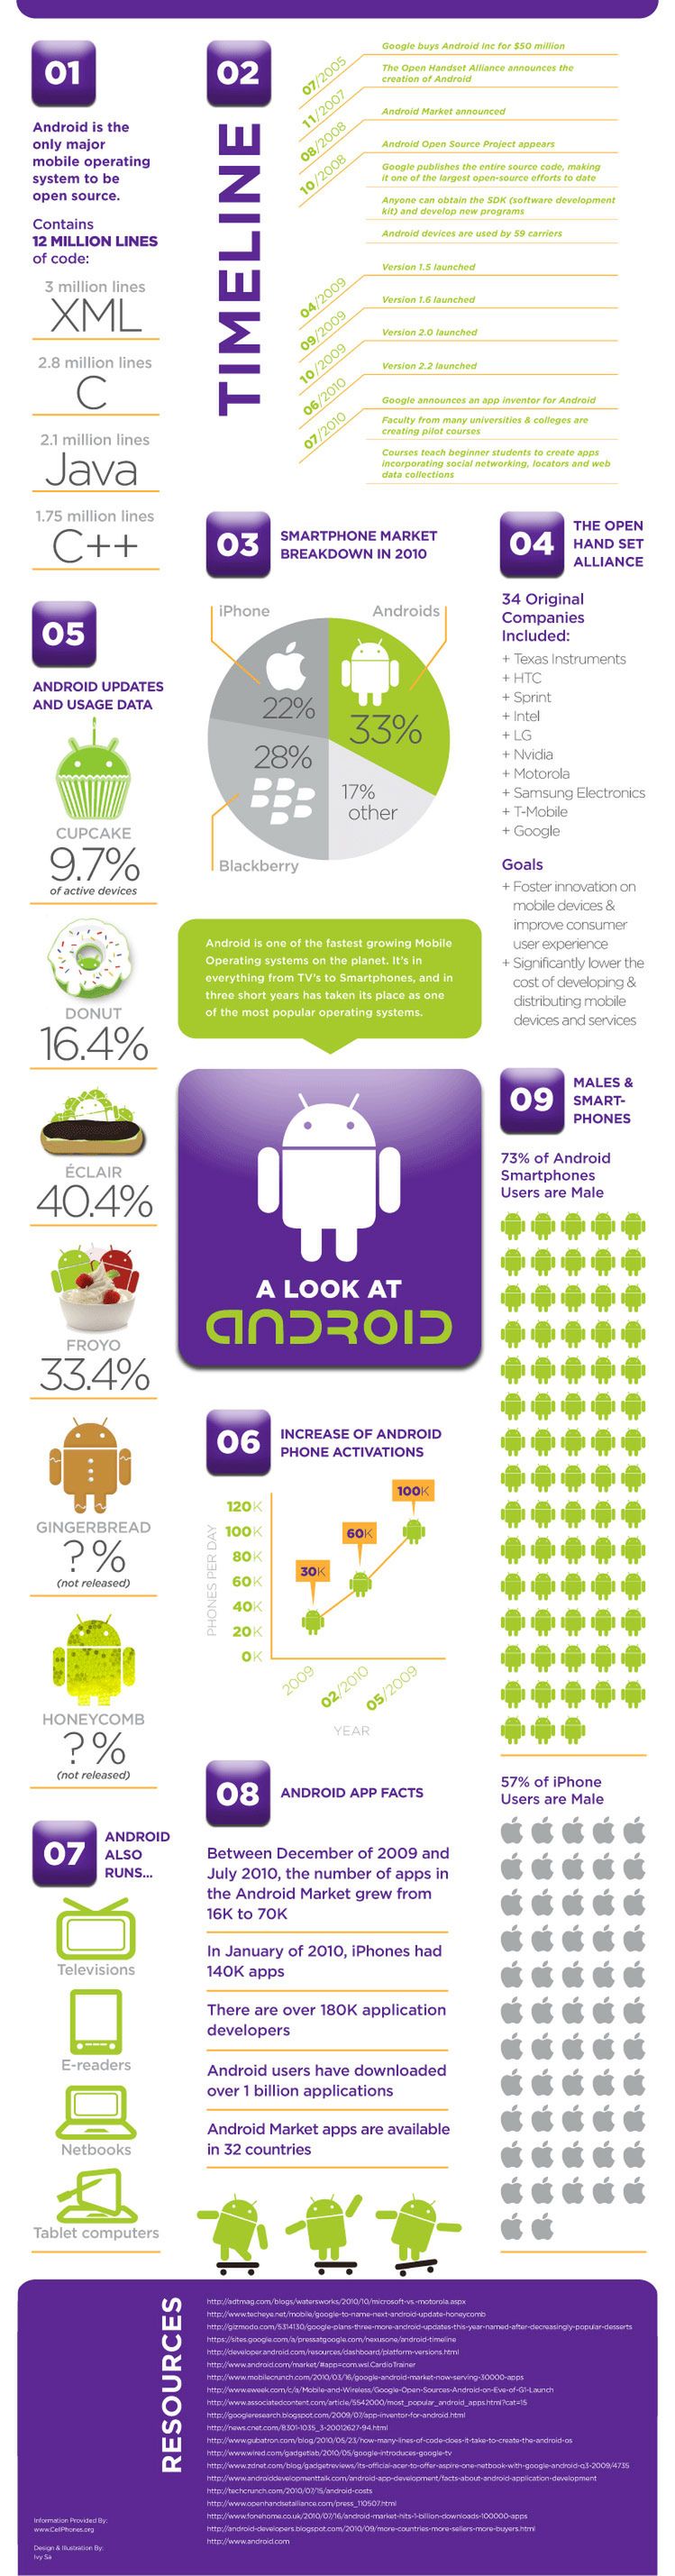 Zakup Androida to najlepsze posunięcie Google'a [infografika]